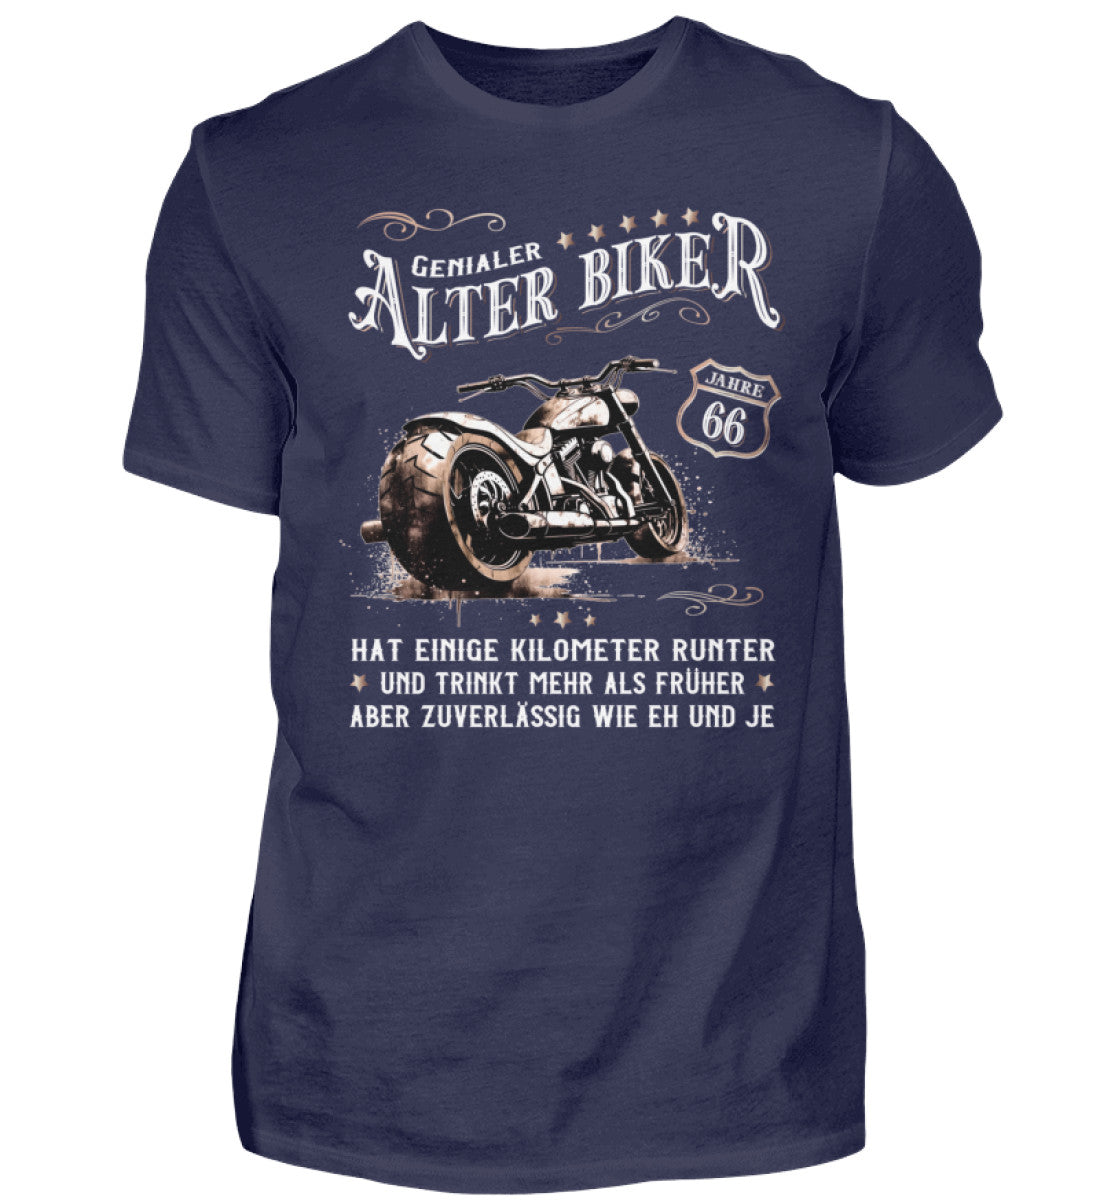 Ein Biker T-Shirt zum Geburtstag für Motorradfahrer von Wingbikers mit dem Aufdruck, Alter Biker - 66 Jahre - Einige Kilometer runter, trinkt mehr - aber zuverlässig wie eh und je - in navy blau.